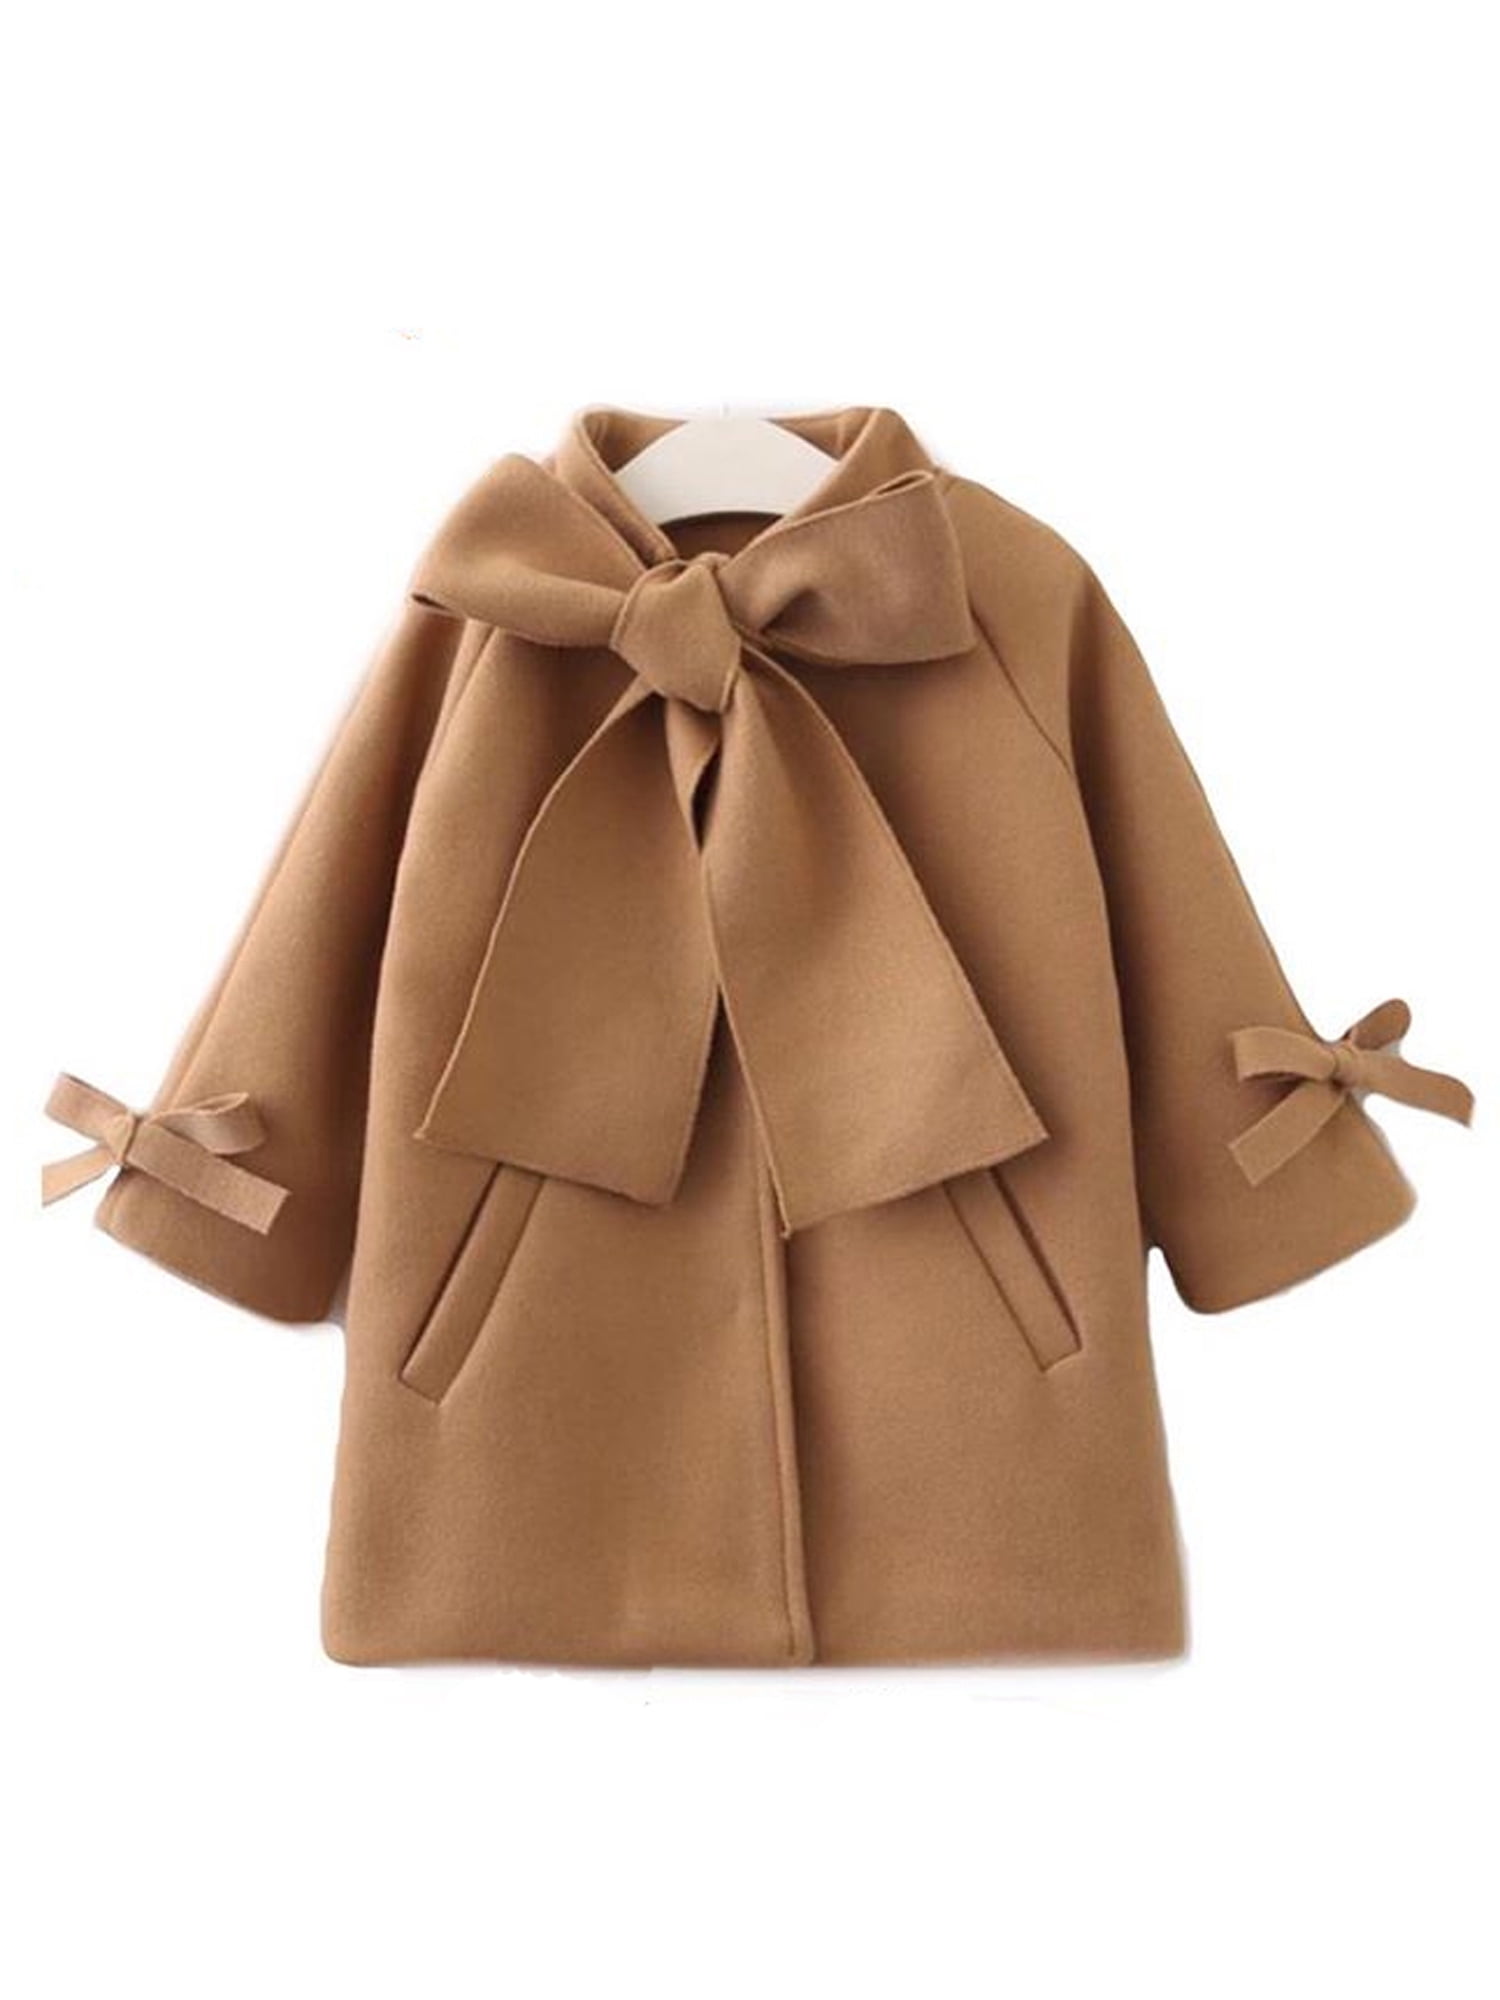 One opening Little Baby Girl Dress Coat Bowknot Winter Warm Coat Kids Jacket Outwear Coat Autumn Winter Wool Overcoat 